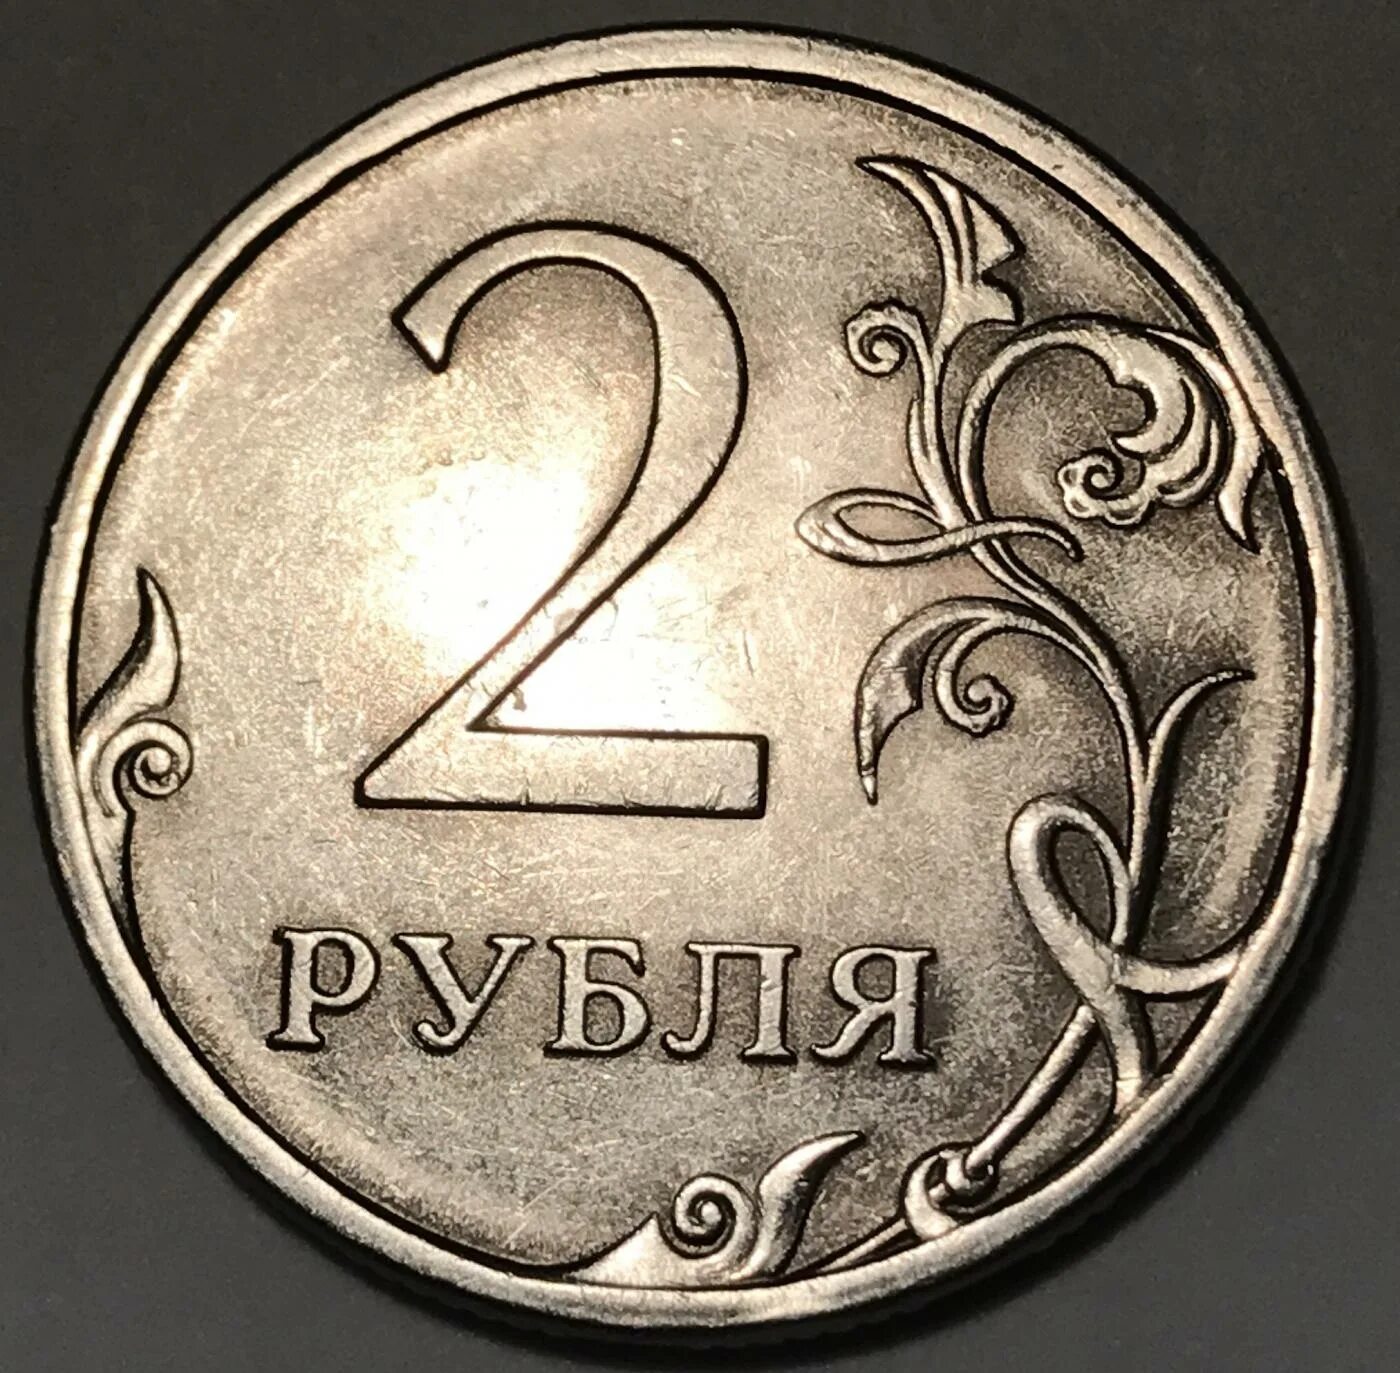 2 рубля цена. 2 Рубля 2009 СПМД. 2 Рубля 2009 года СПМД магнитные. 2 Рубля 2009 СПМД немагнитная. Монеты 2 рубля 2000 года, буквы СПМД.